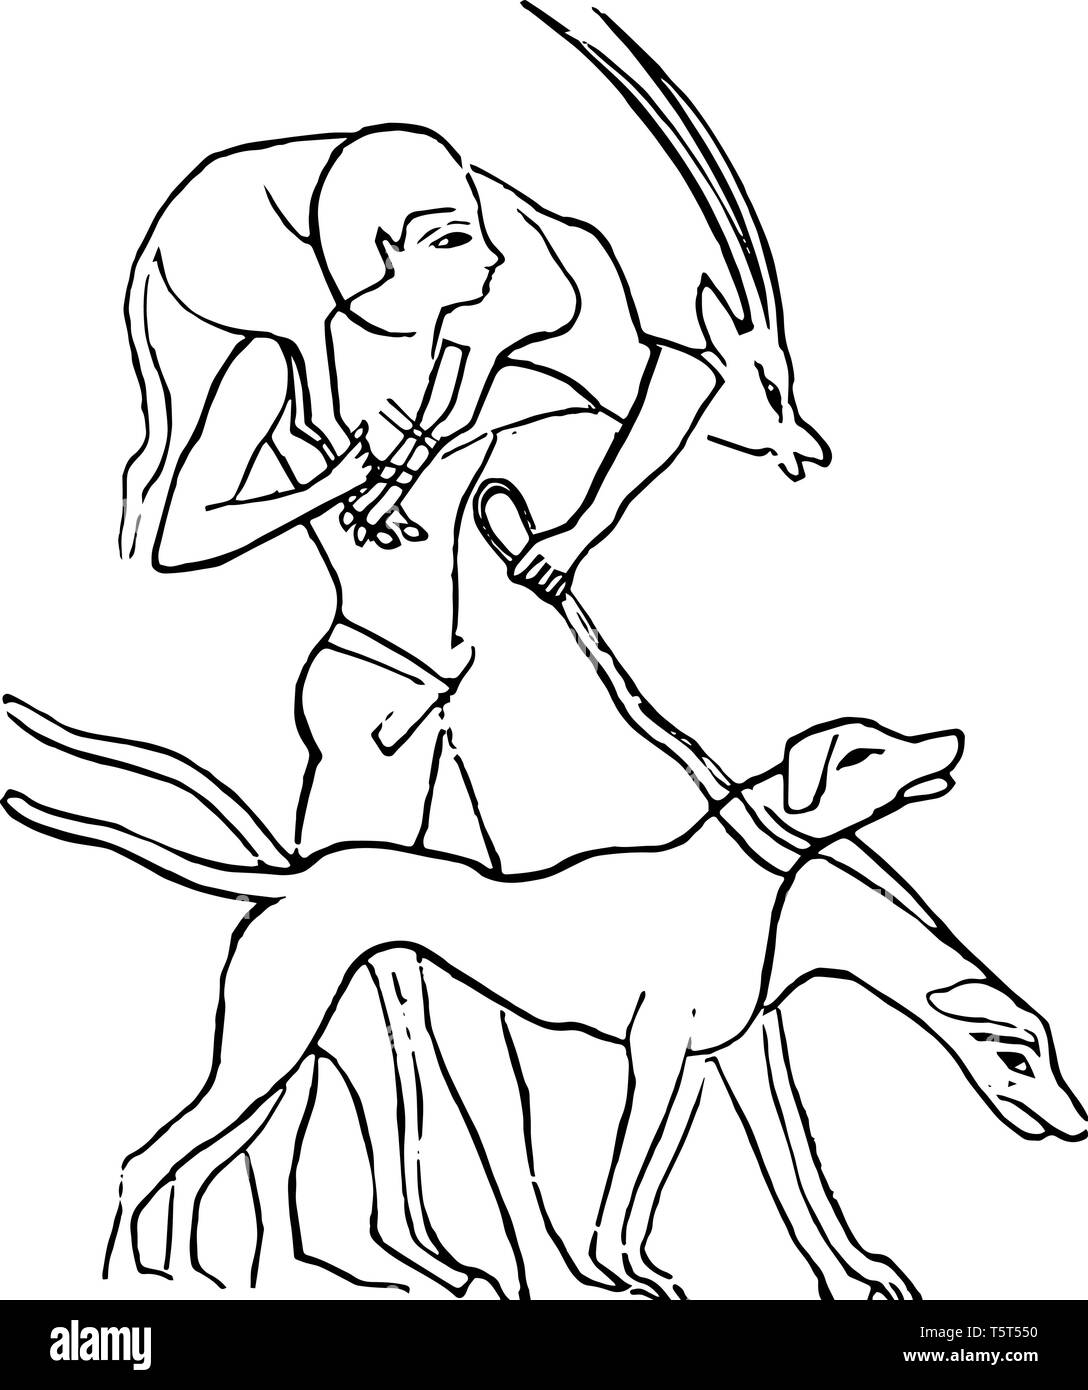 Une illustration de la manière dont hounds étaient utilisés par les Égyptiens pour chasser des proies, vintage dessin ou gravure illustration. Illustration de Vecteur